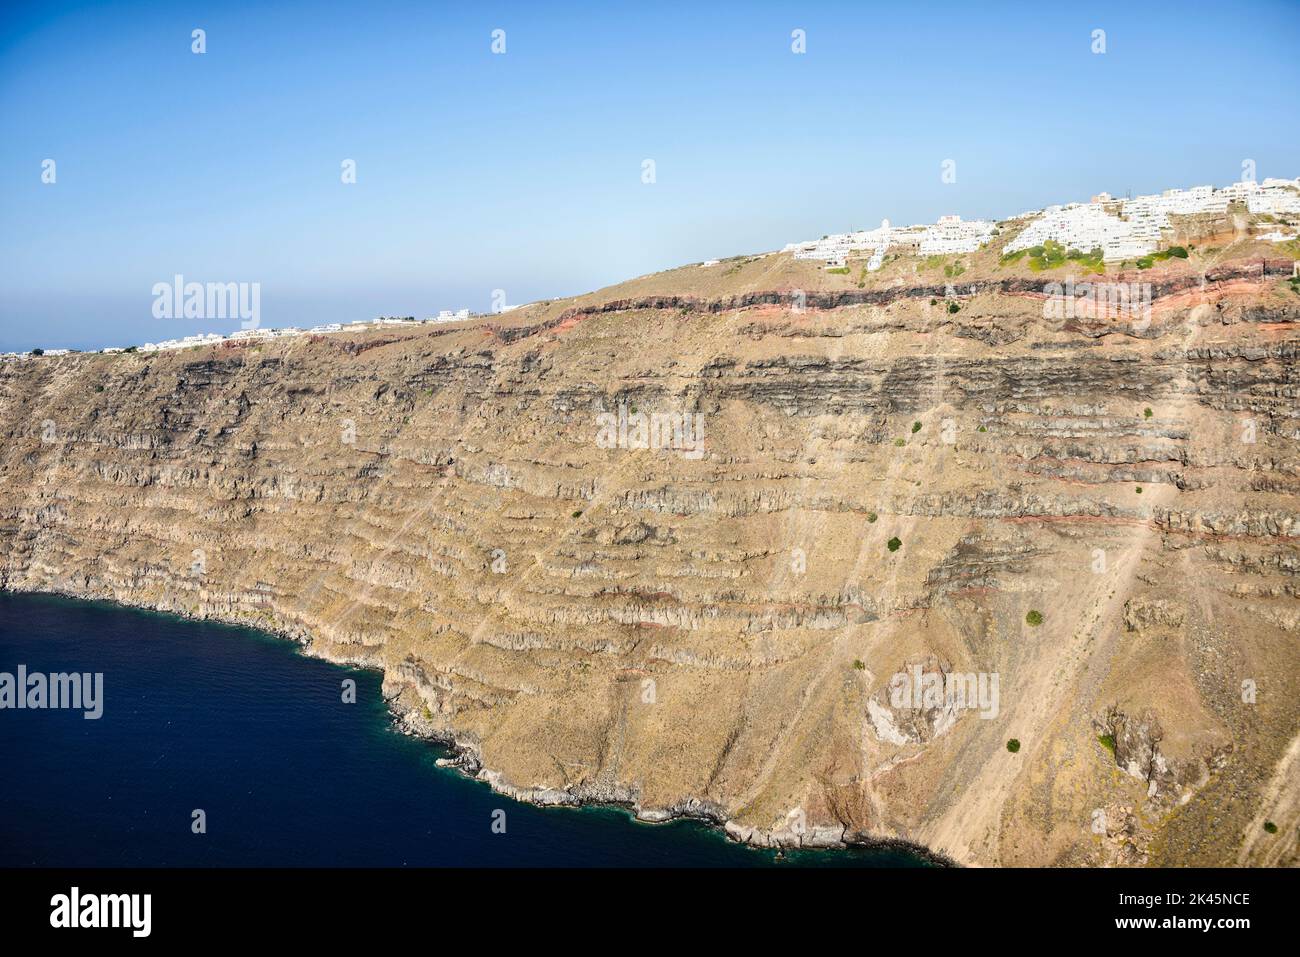 Les falaises et les formations rocheuses d'une île dans la mer Égée, avec une ville de maisons blanches au sommet des falaises. Banque D'Images